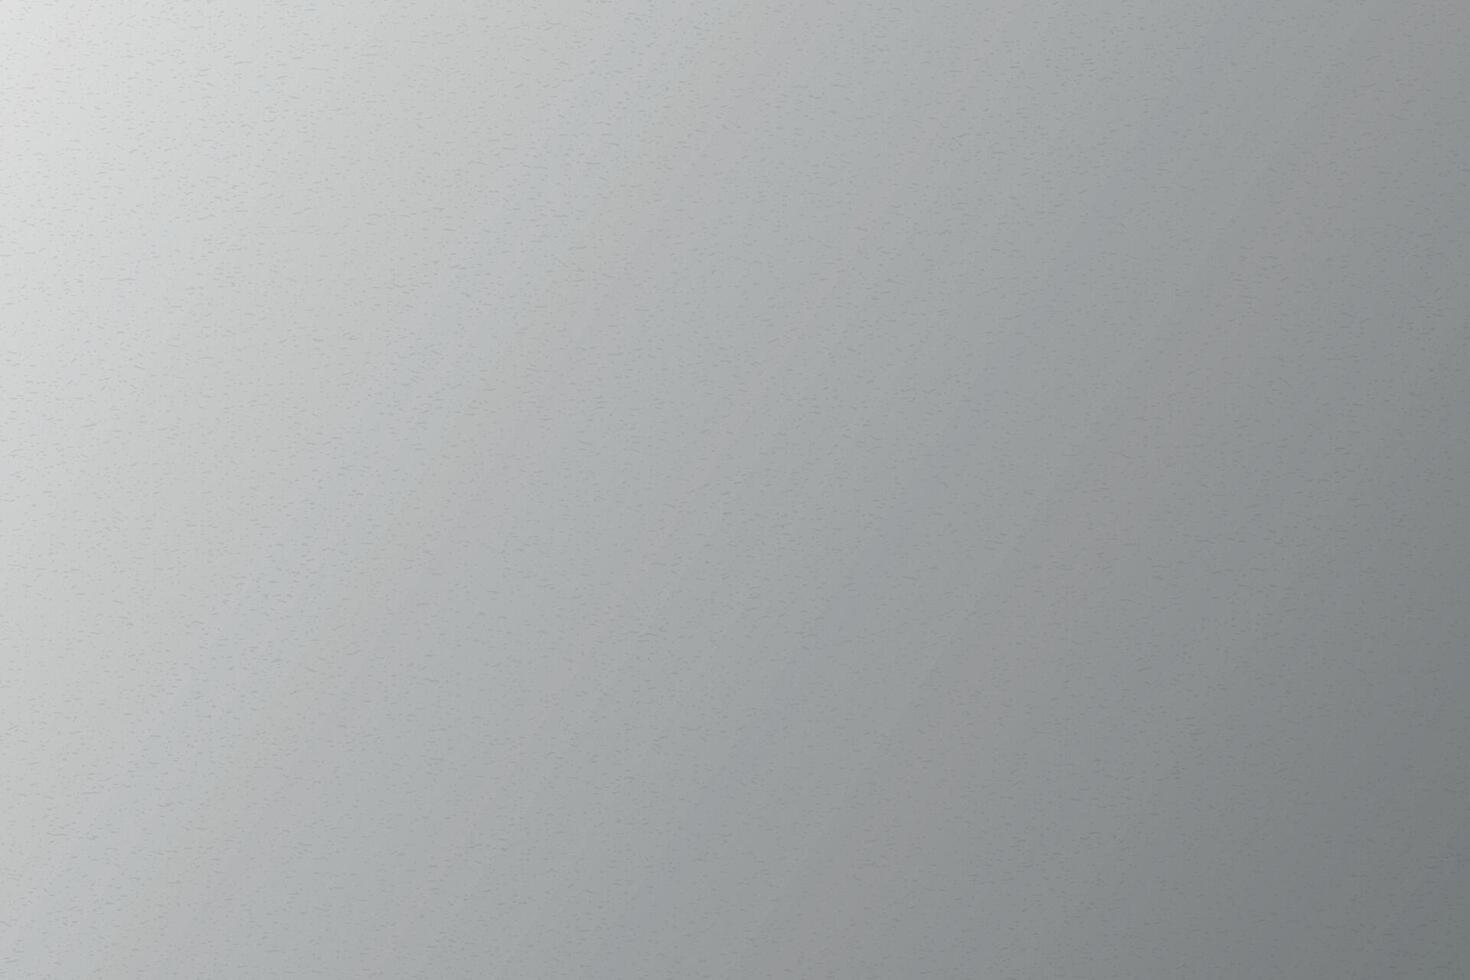 svart och vit lutning bakgrund med spannmål ljud textur vektor